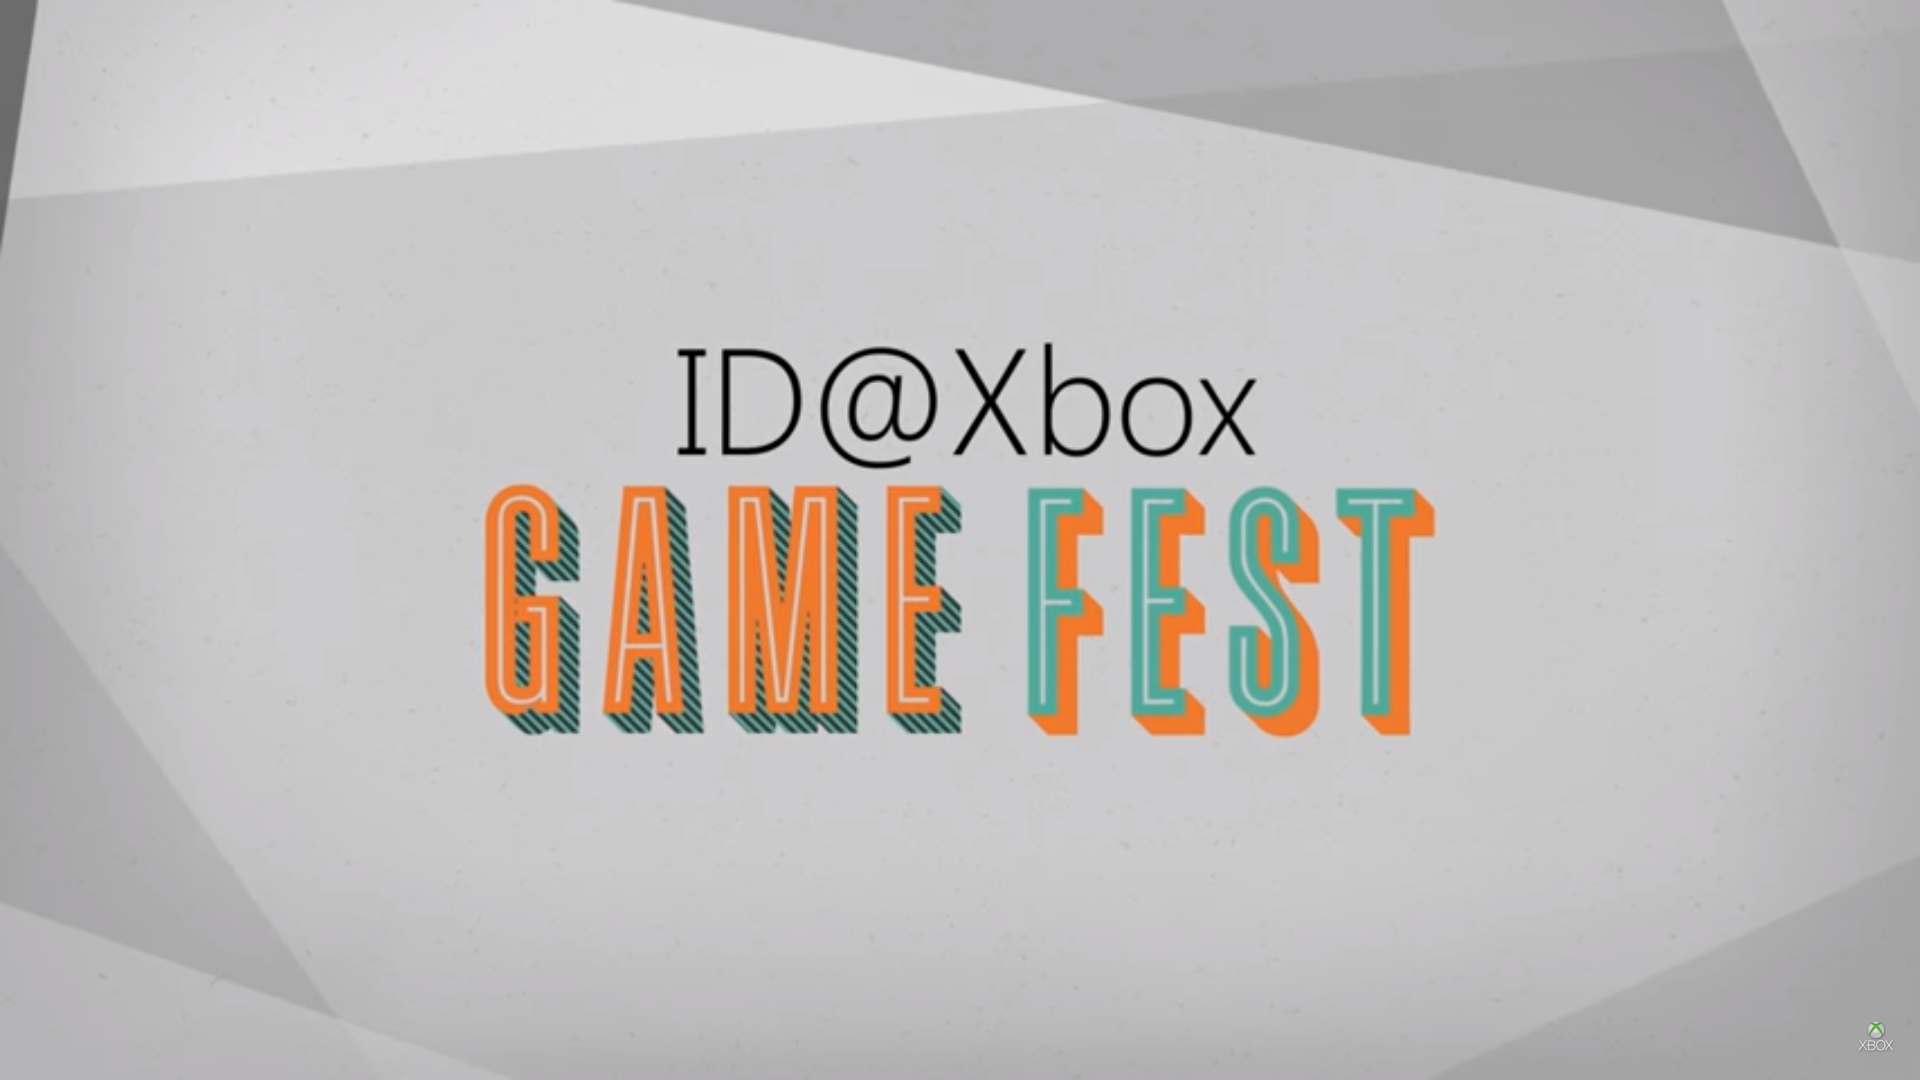 idxboxgamefest